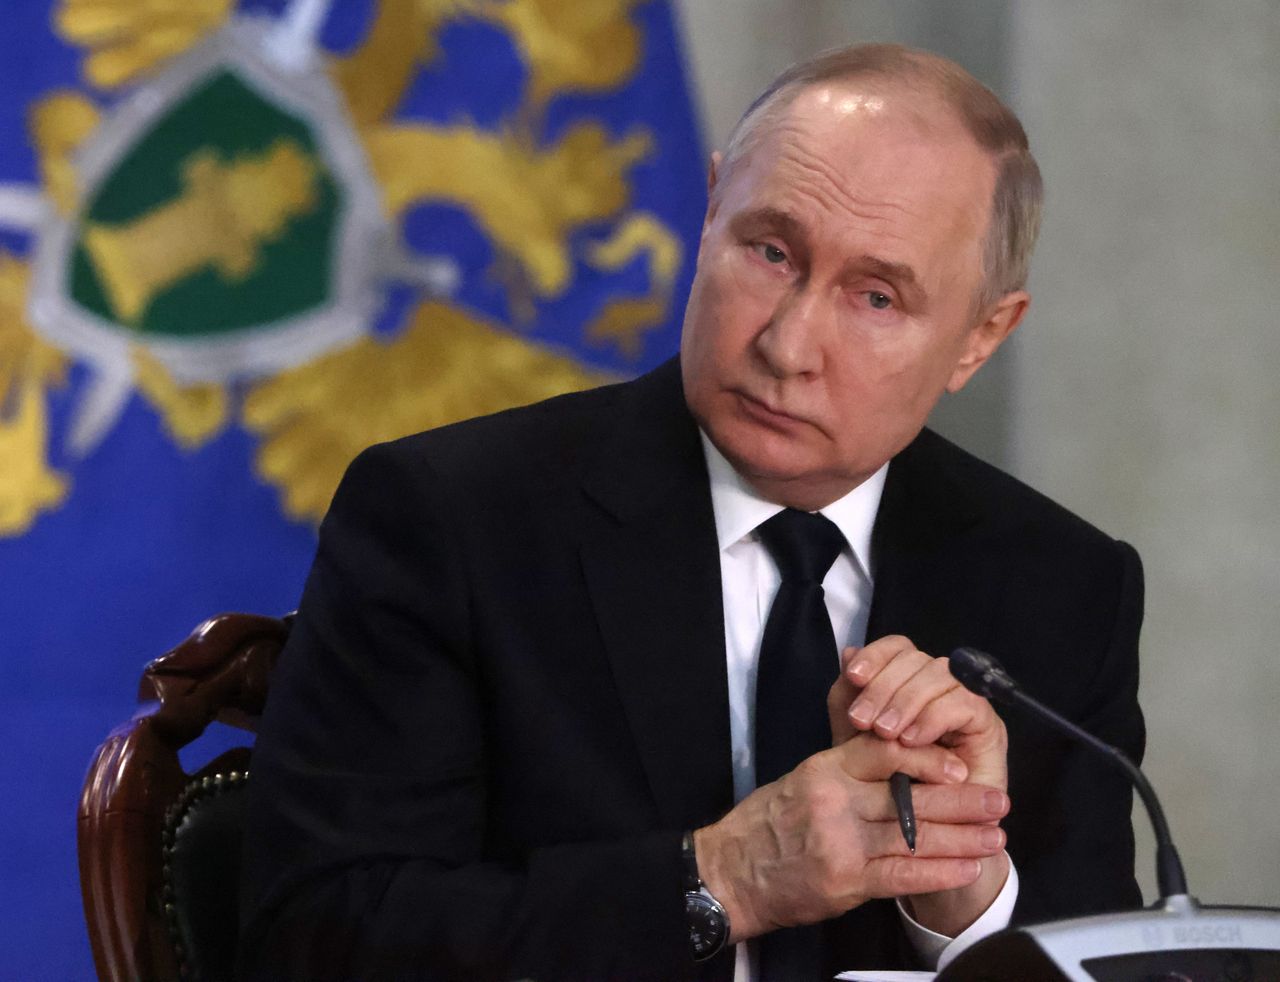 Latvian president warns: Russian threats extend beyond Ukraine